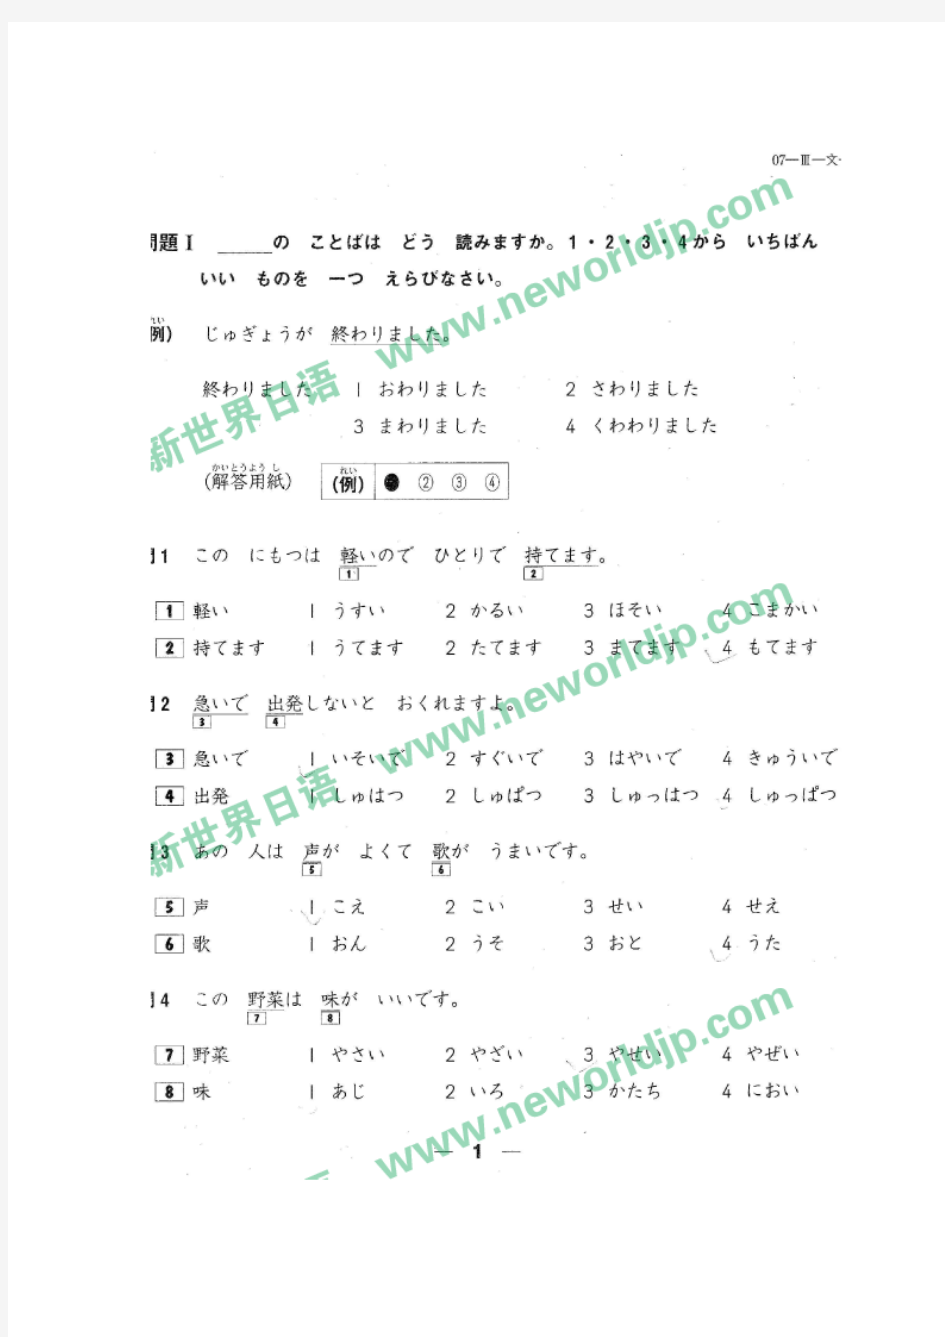 2007年日语能力考试3级真题及答案(全)